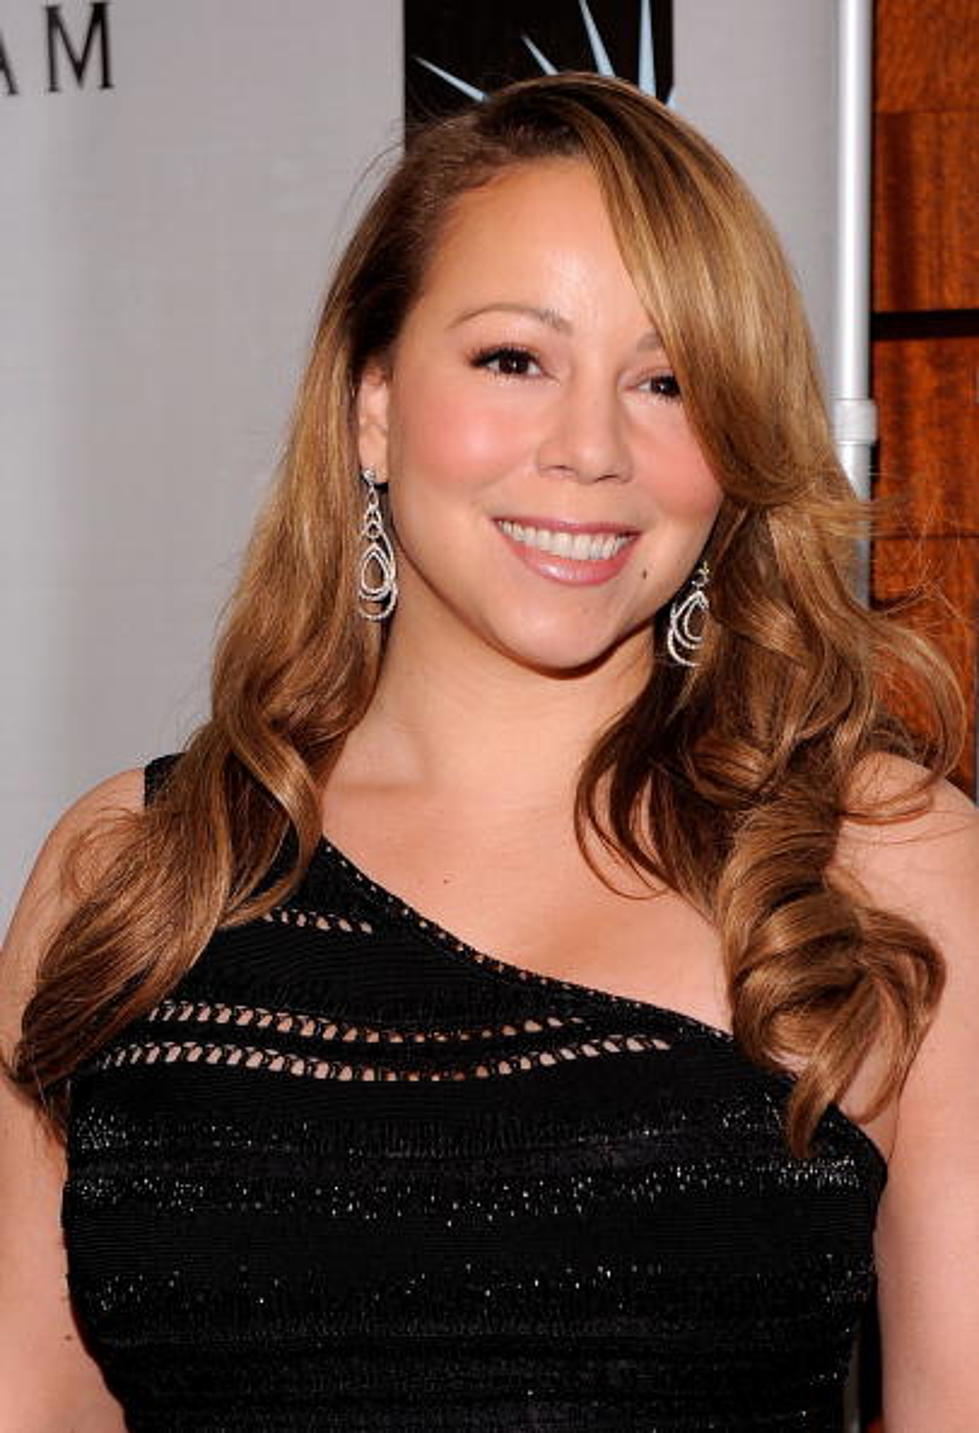 Mariah Carey’s Due Date Announced